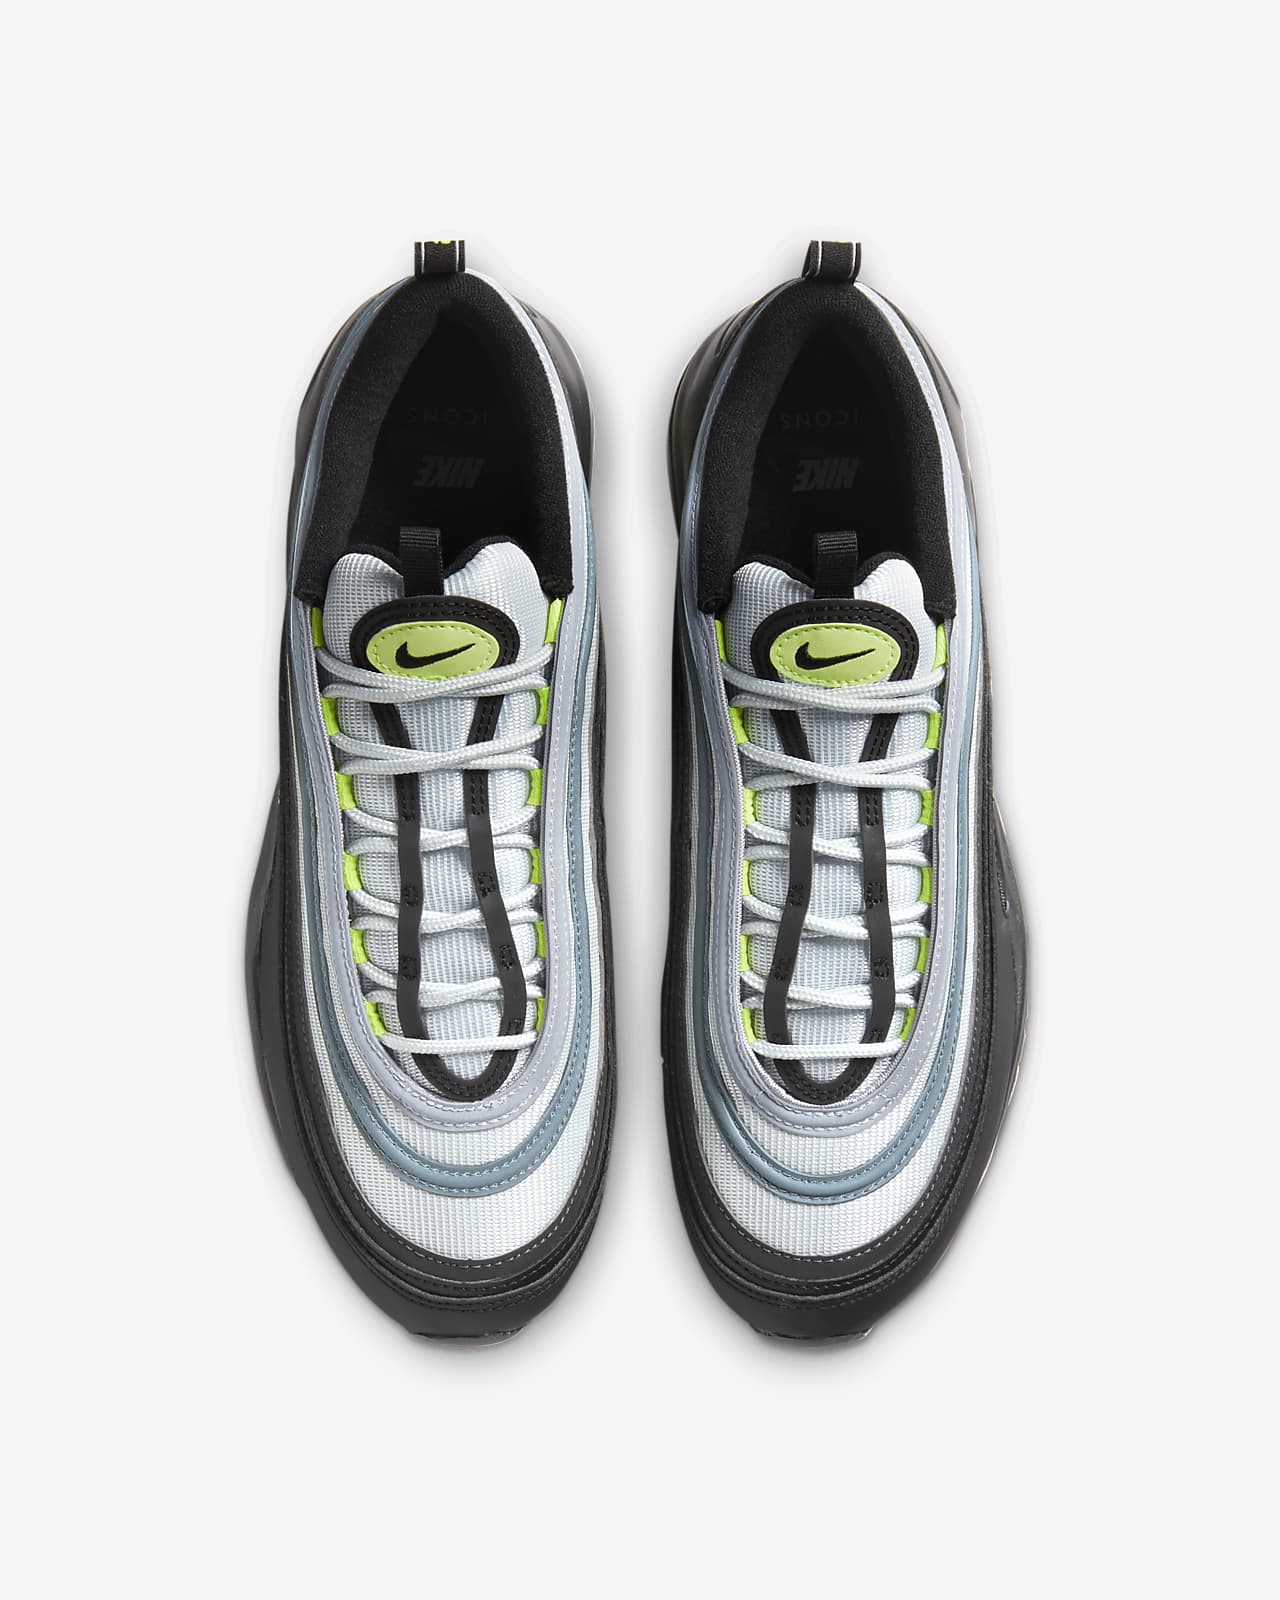 Nike Air Max 97 Shoes.